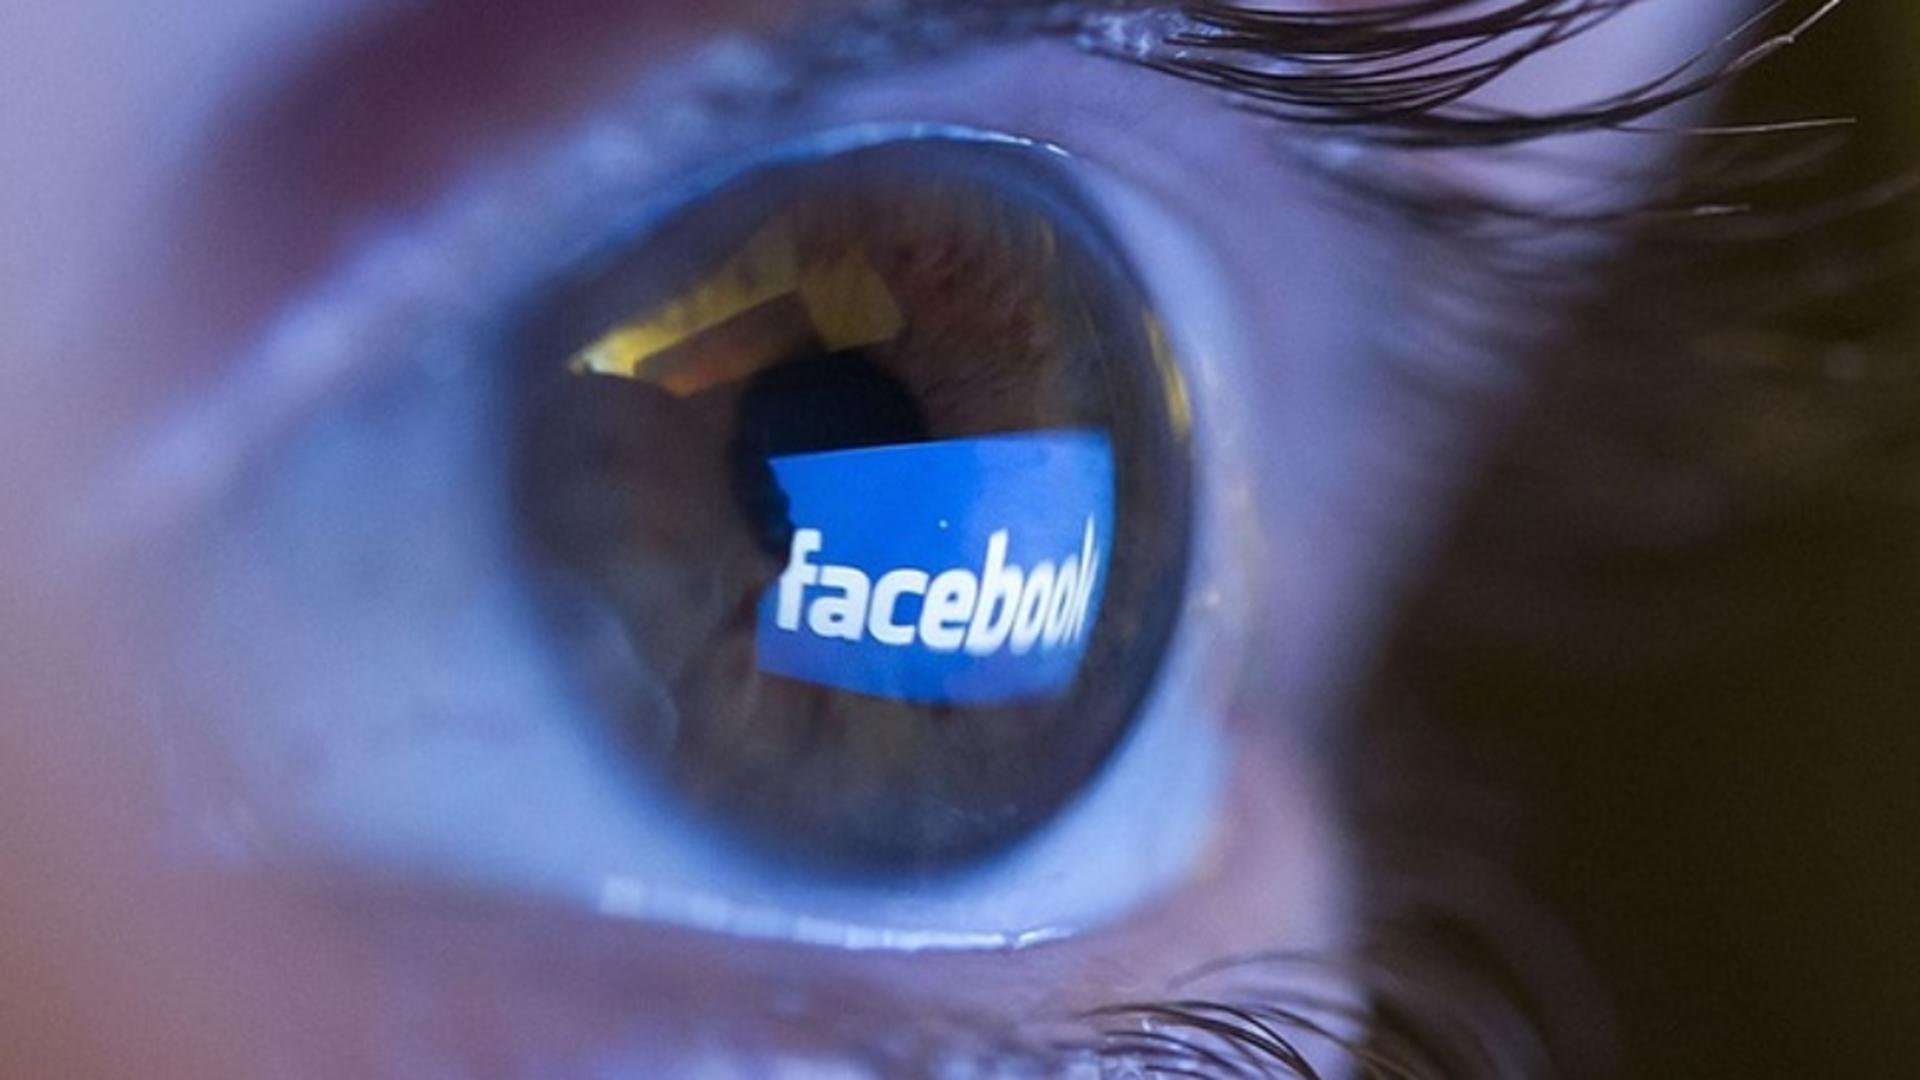  Facebook și Instagram, date în judecată pentru funcții destinate copiilor şi adolescenţilor care dau dependență